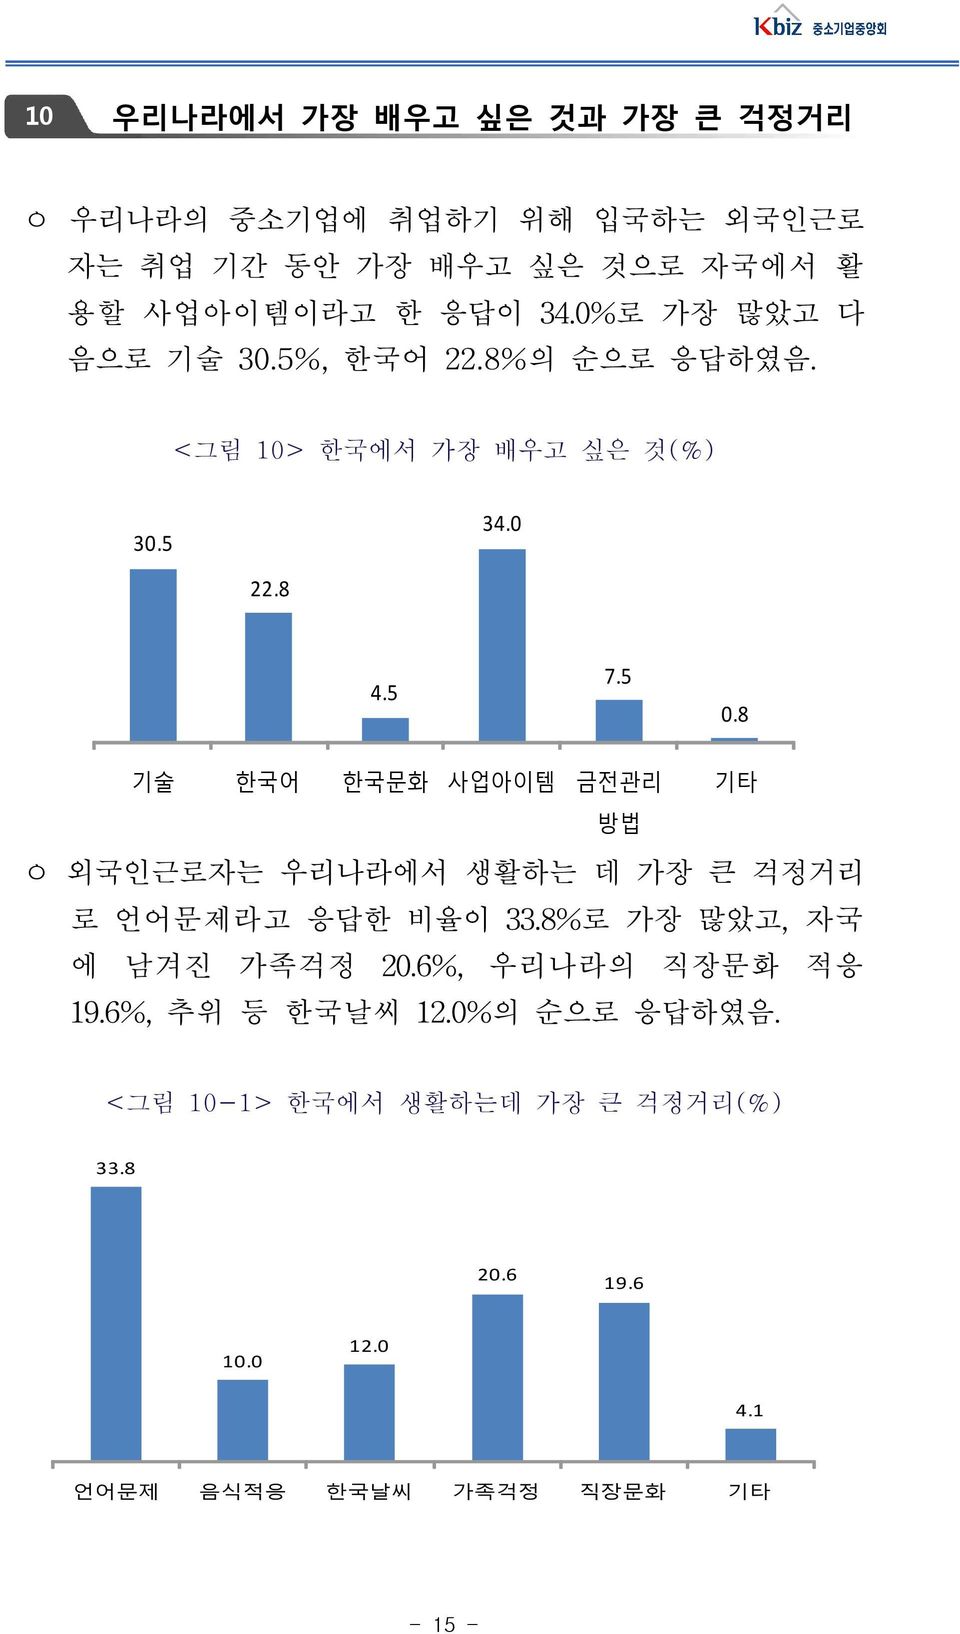 8 기술 한국어 한국문화 사업아이템 금전관리 기타 방법 ㅇ 외국인근로자는 우리나라에서 생활하는 데 가장 큰 걱정거리 로 언어문제라고 응답한 비율이 33.8%로 가장 많았고, 자국 에 남겨진 가족걱정 20.